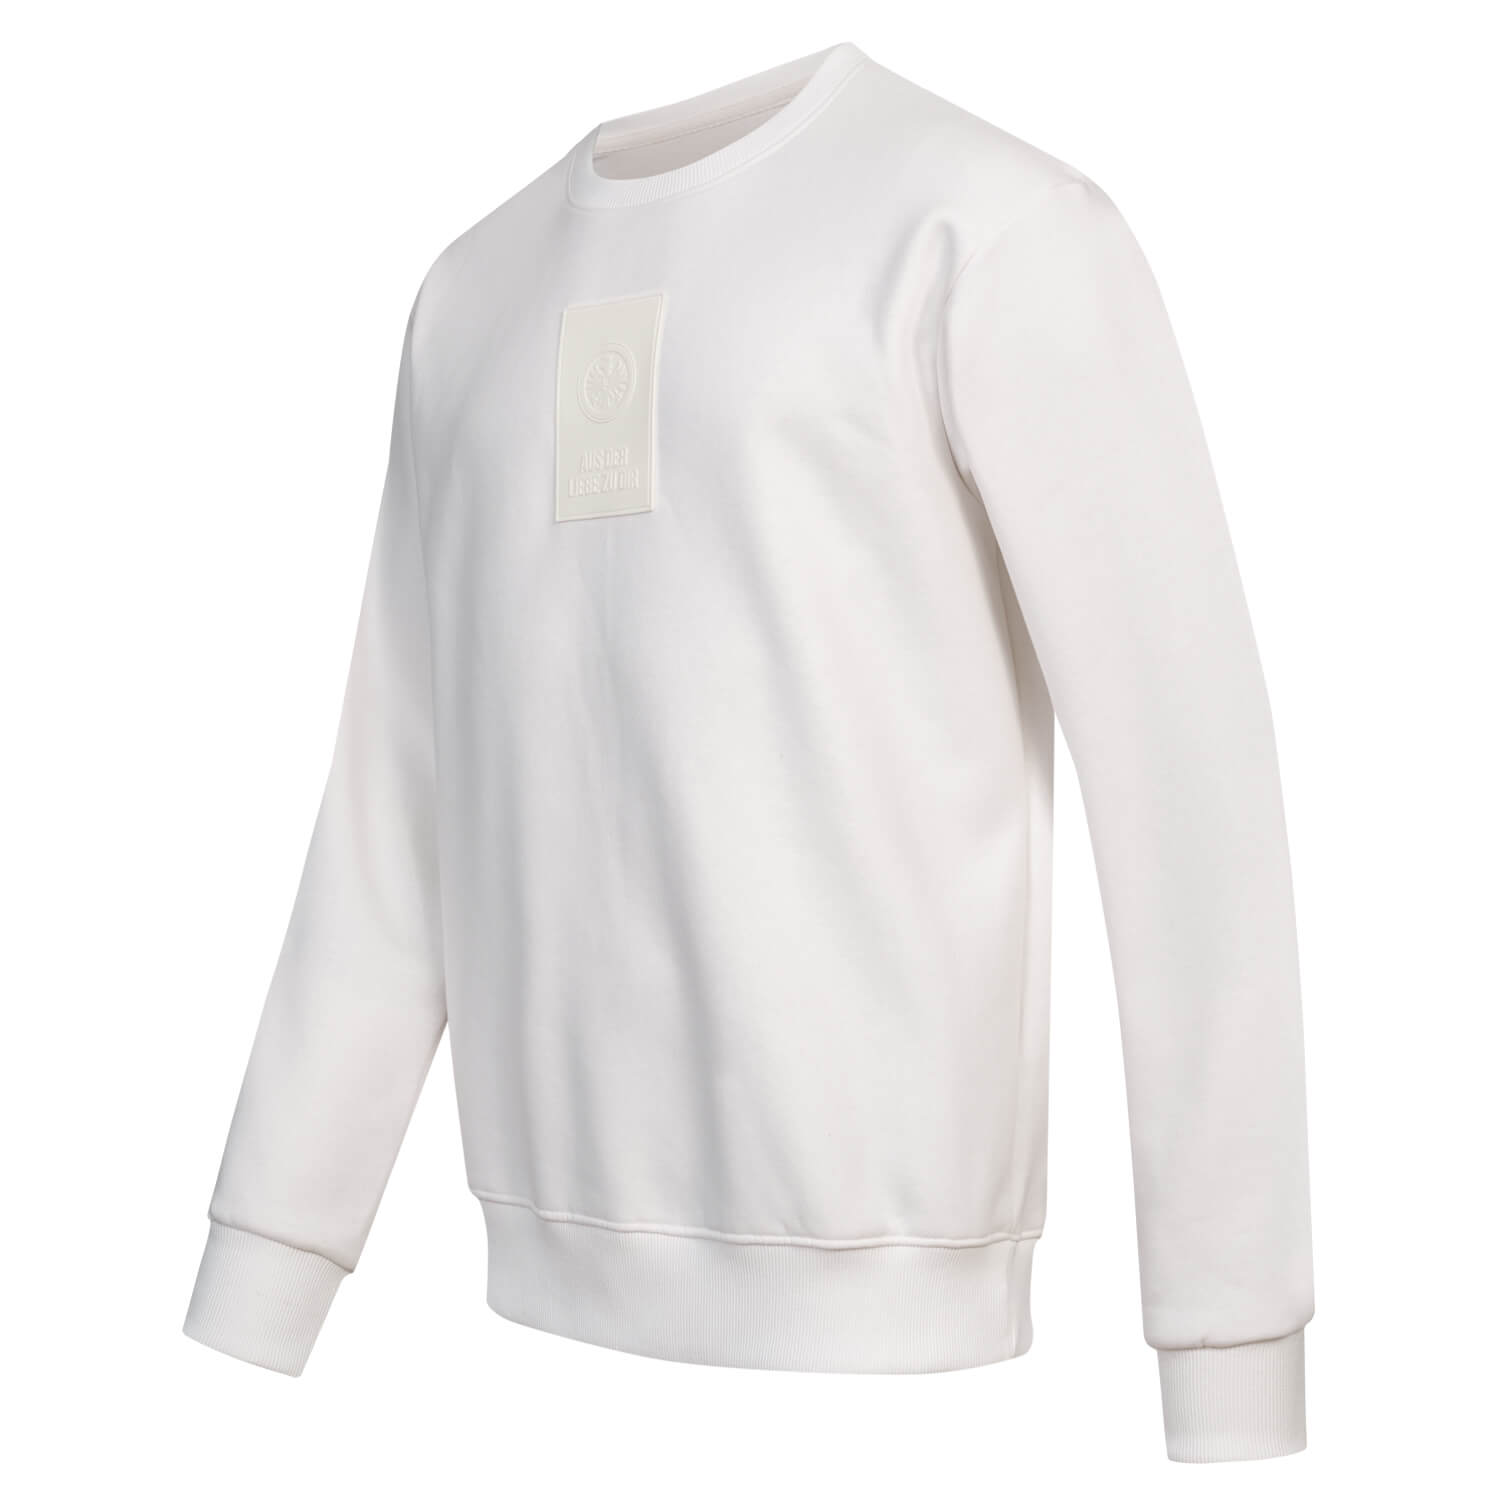 Bild 3: Sweater White Badge